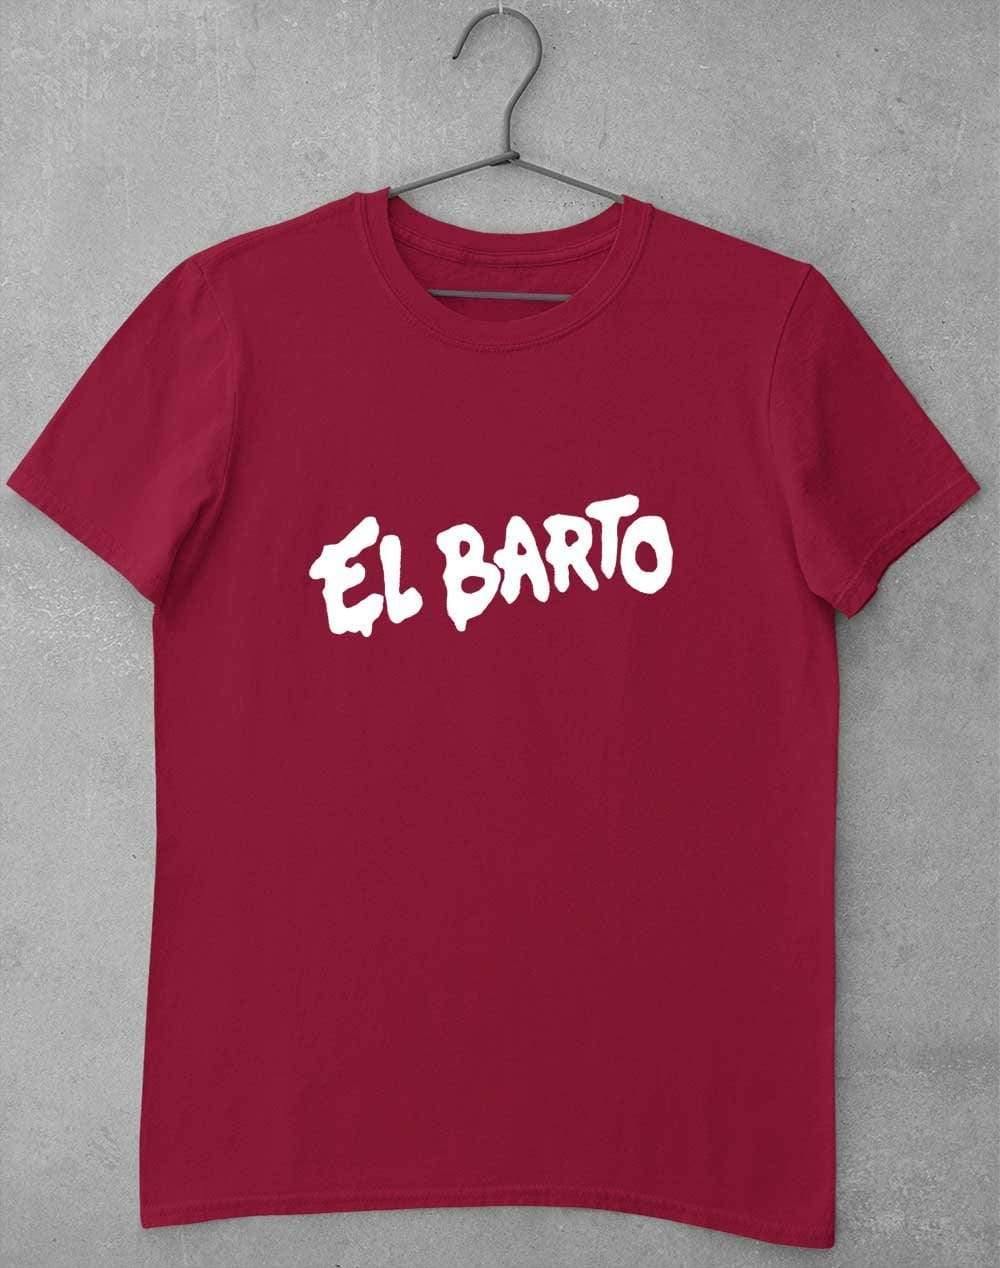 El Barto Tag T-Shirt S / Cardinal Red  - Off World Tees